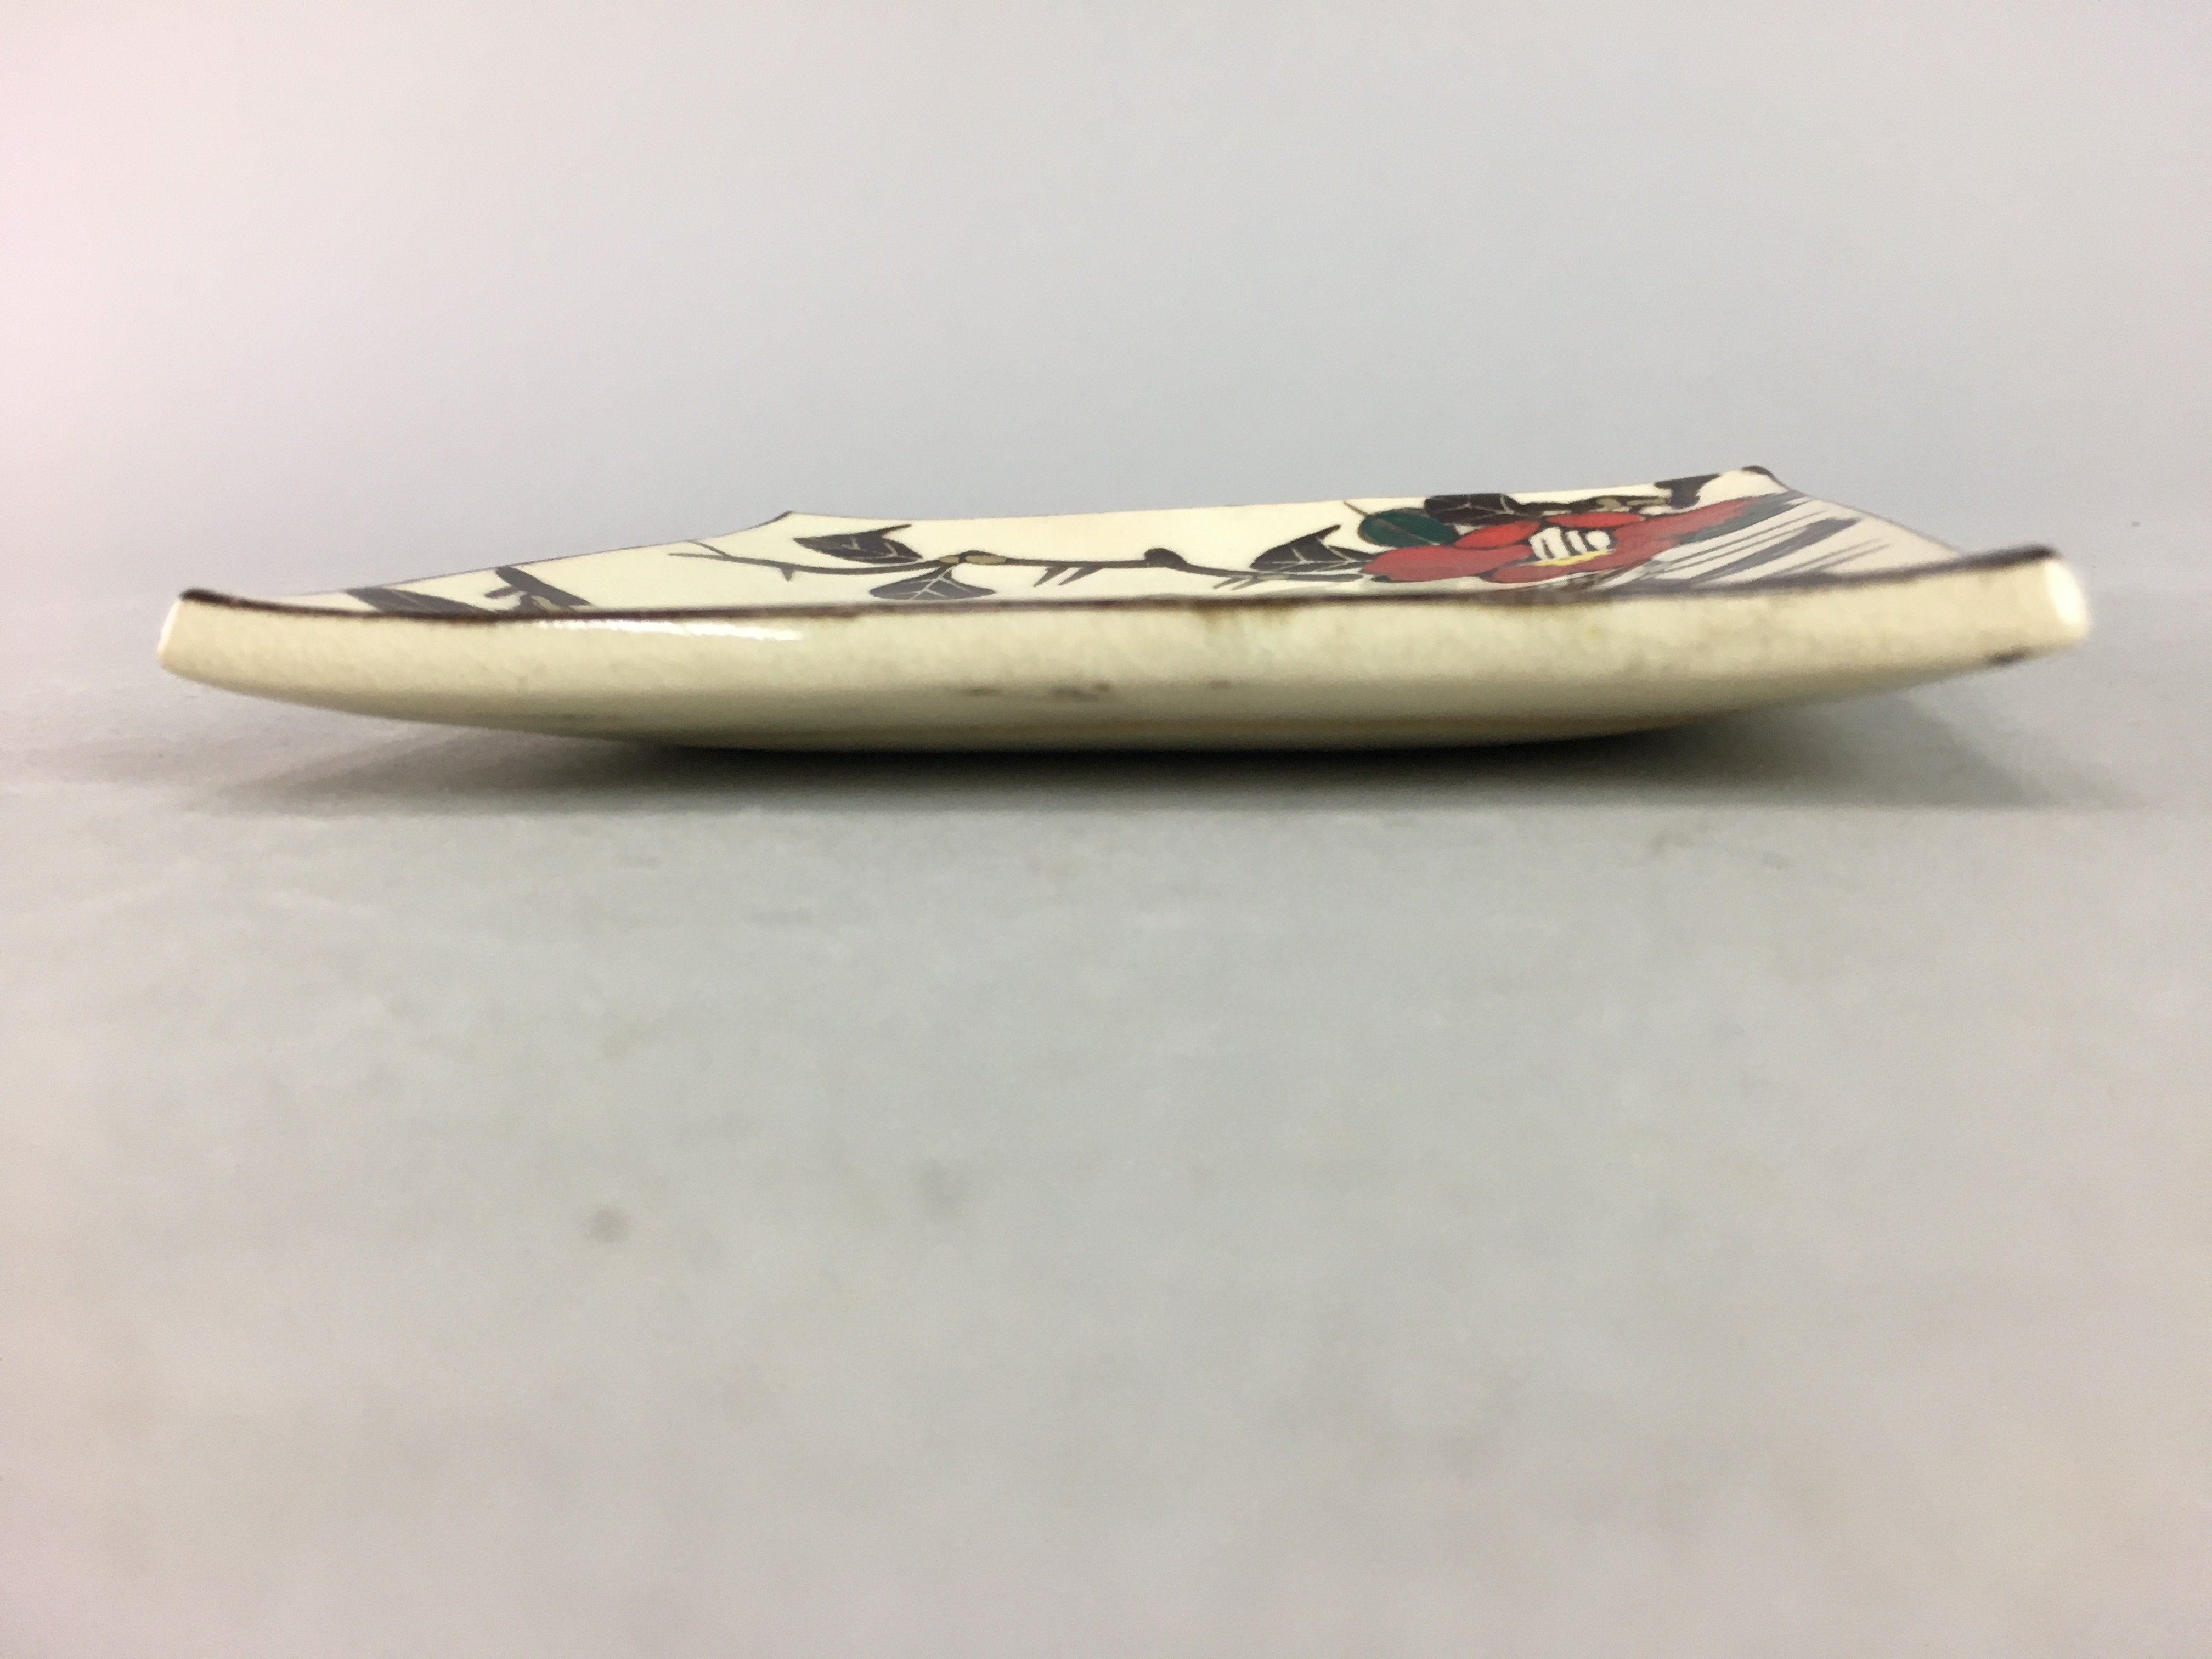 Japanese Ceramic Square Plate Vtg Pottery Floral Design Beige Sushi PT99